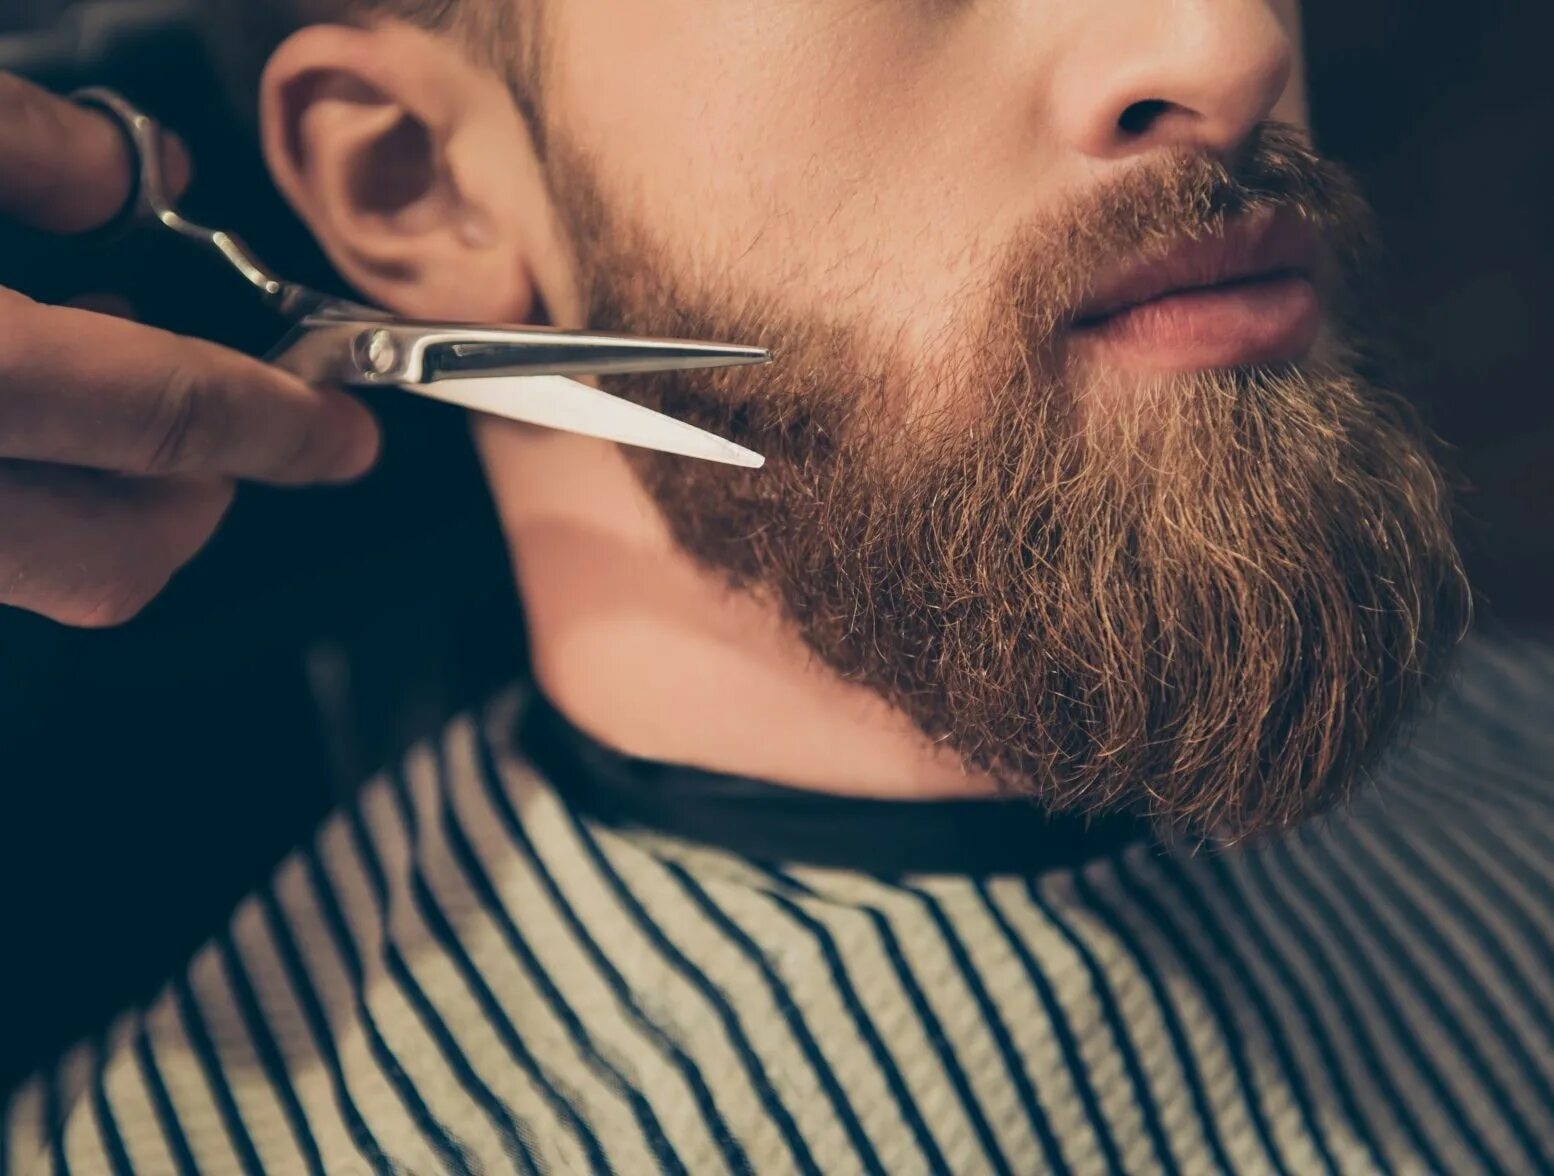 Борода барбер. Стрижка бороды. Бороды мужские стильные. Моделирование бороды. Борода украшает